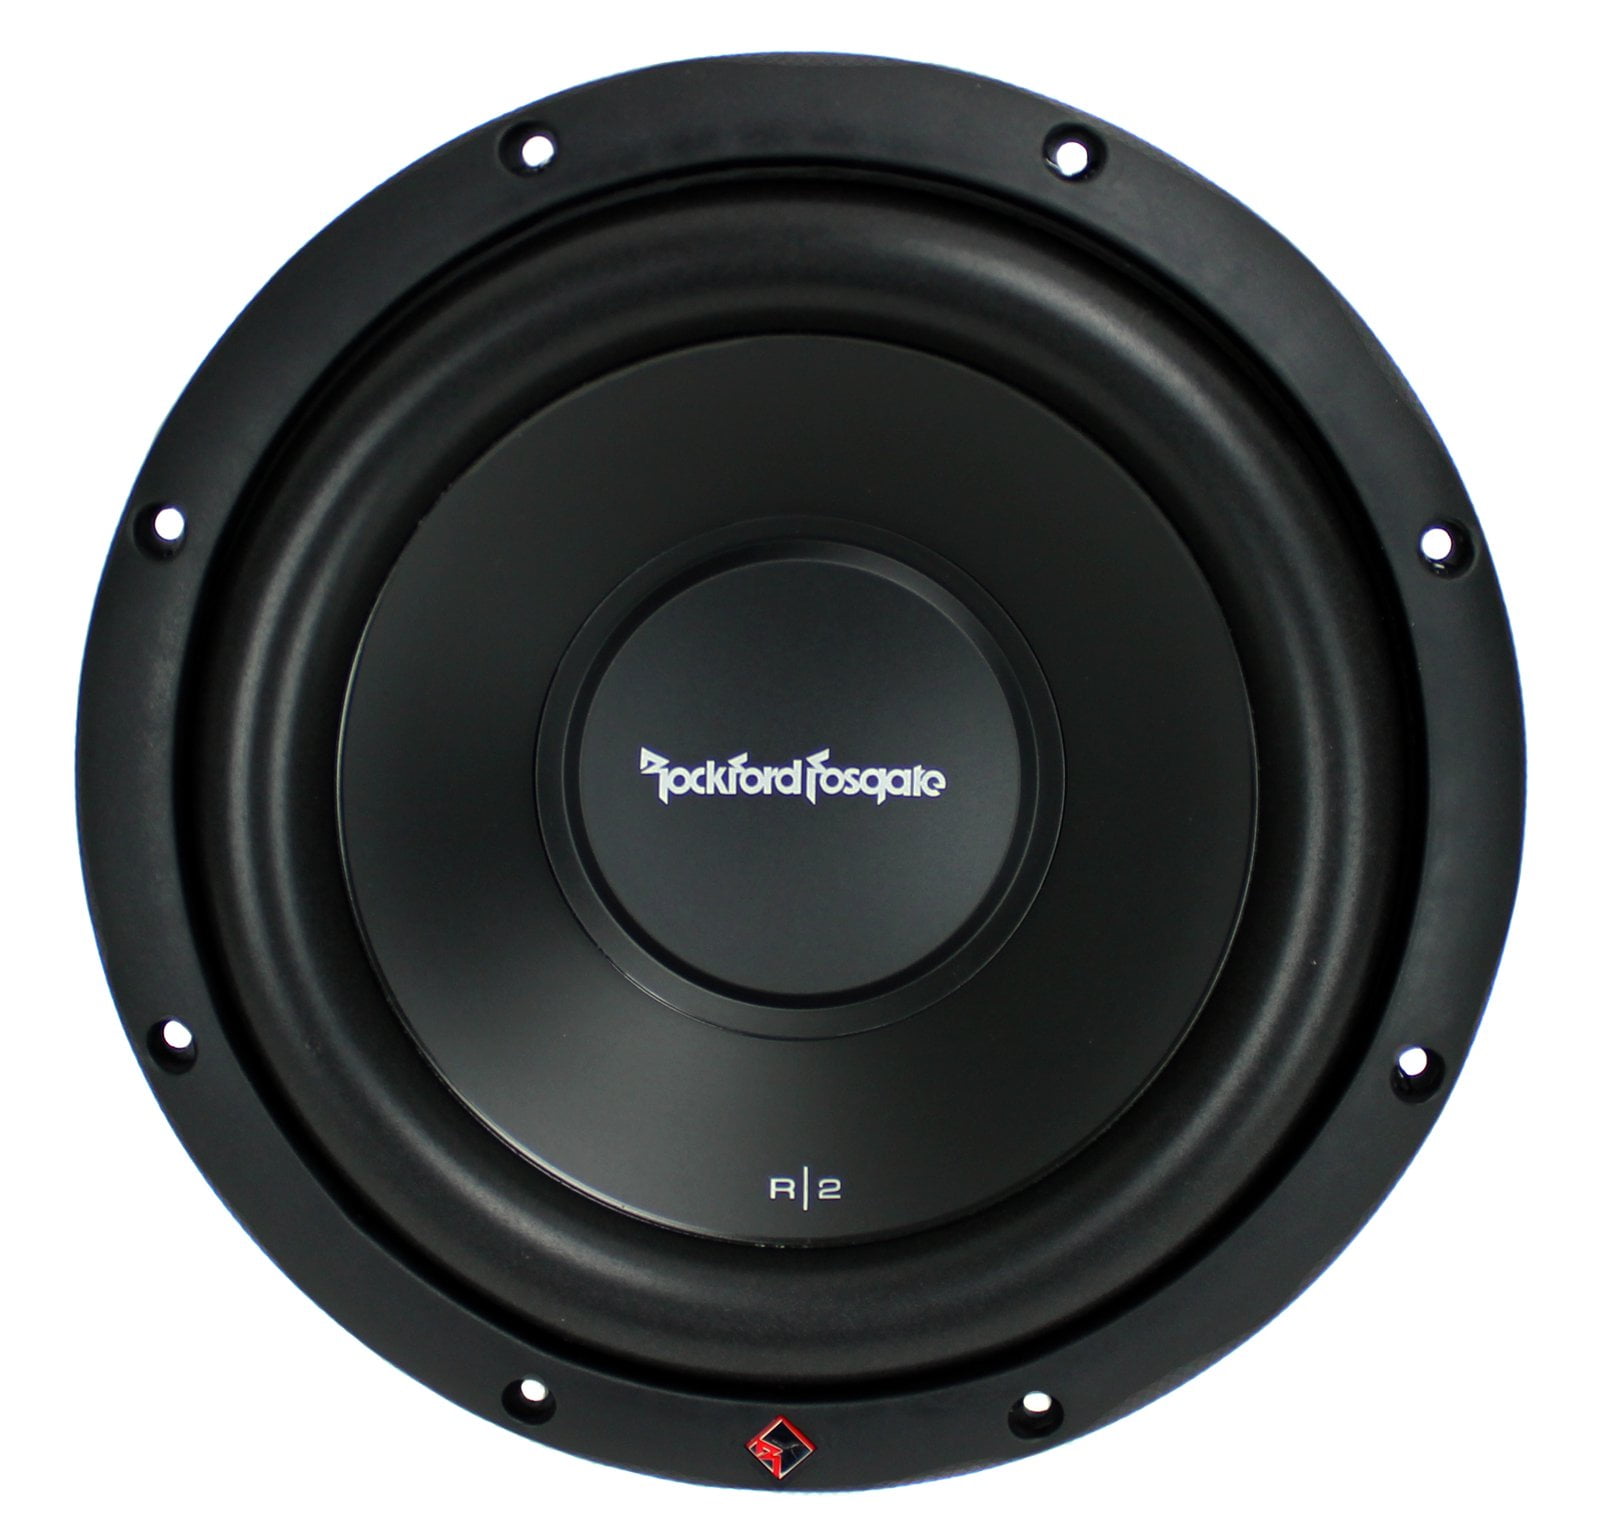 200W Peak 6.75" 2 SCOSCHE HD6504 Car Speakers 4 Way 6.5" 50W RMS ™